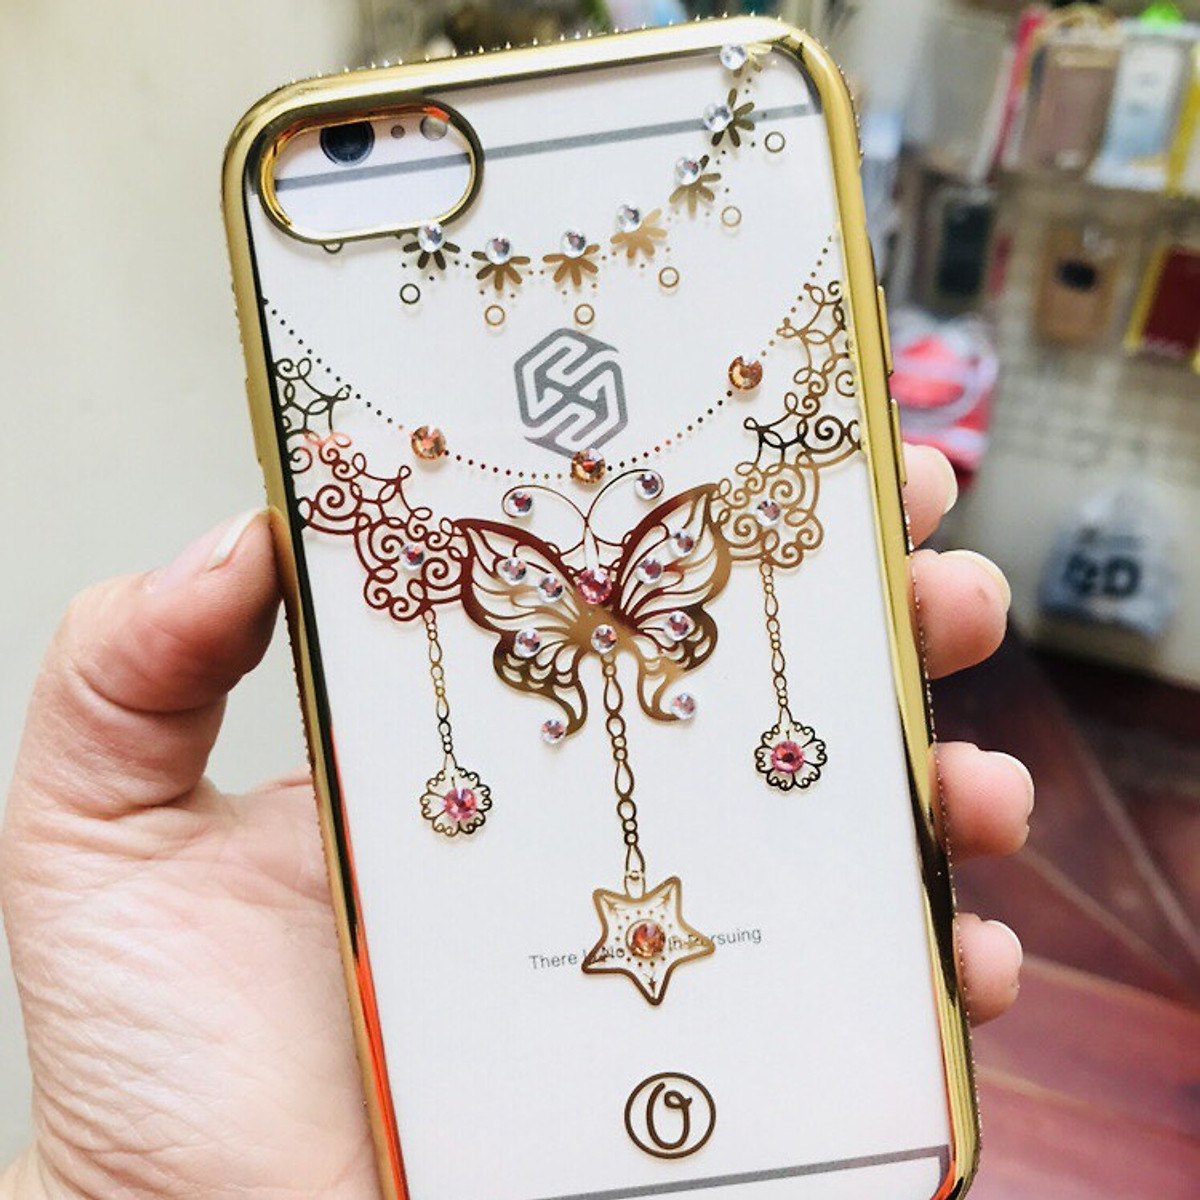 Ốp lưng cho Iphone 7/8 in hình bướm đính đá đẹp mắt - Viền vàng ...